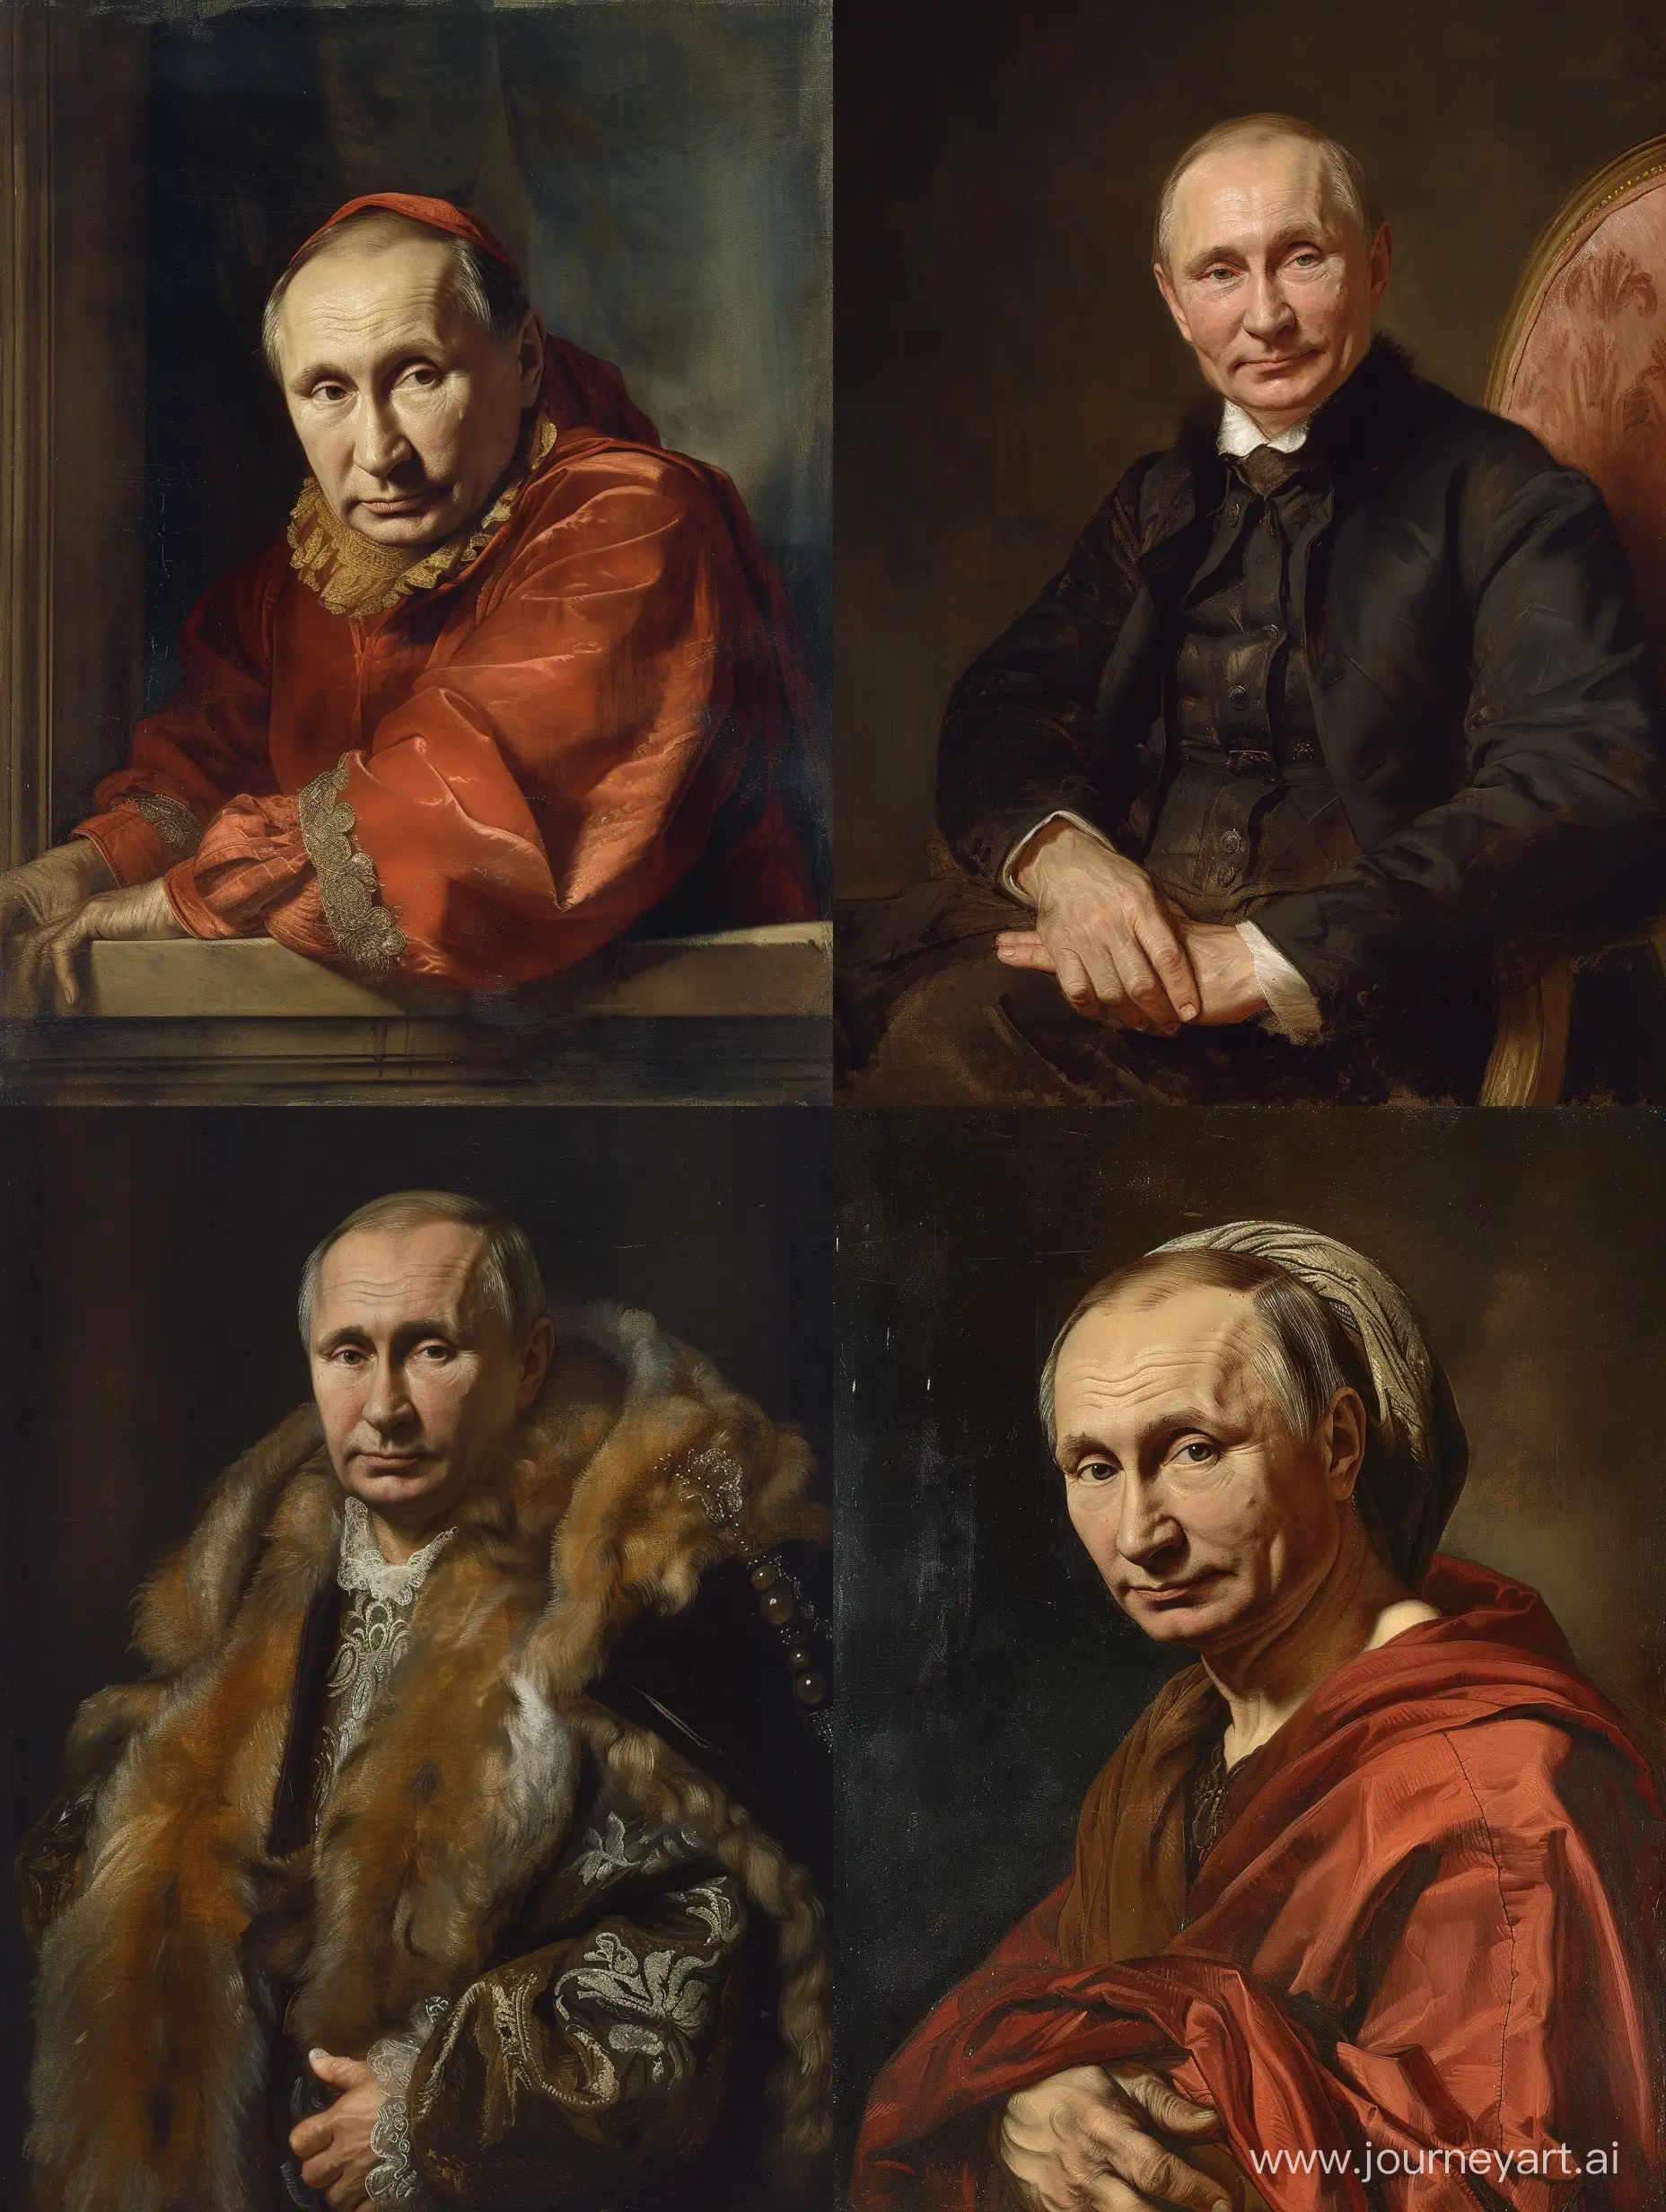 Renaissance-Style-Portrait-Vladimir-Putin-by-Jacques-Louis-David